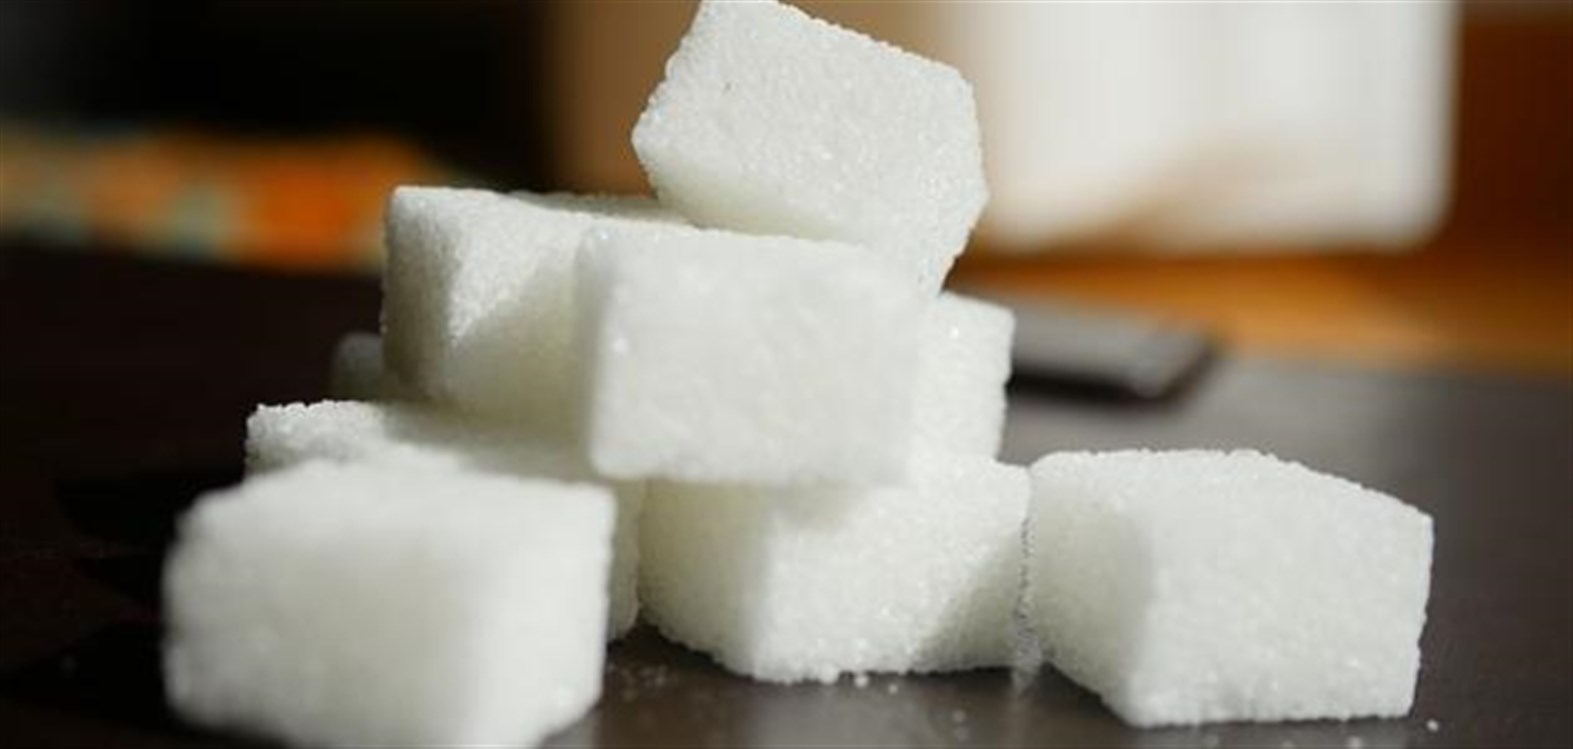 السعرات الحرارية في مكعبات السكر